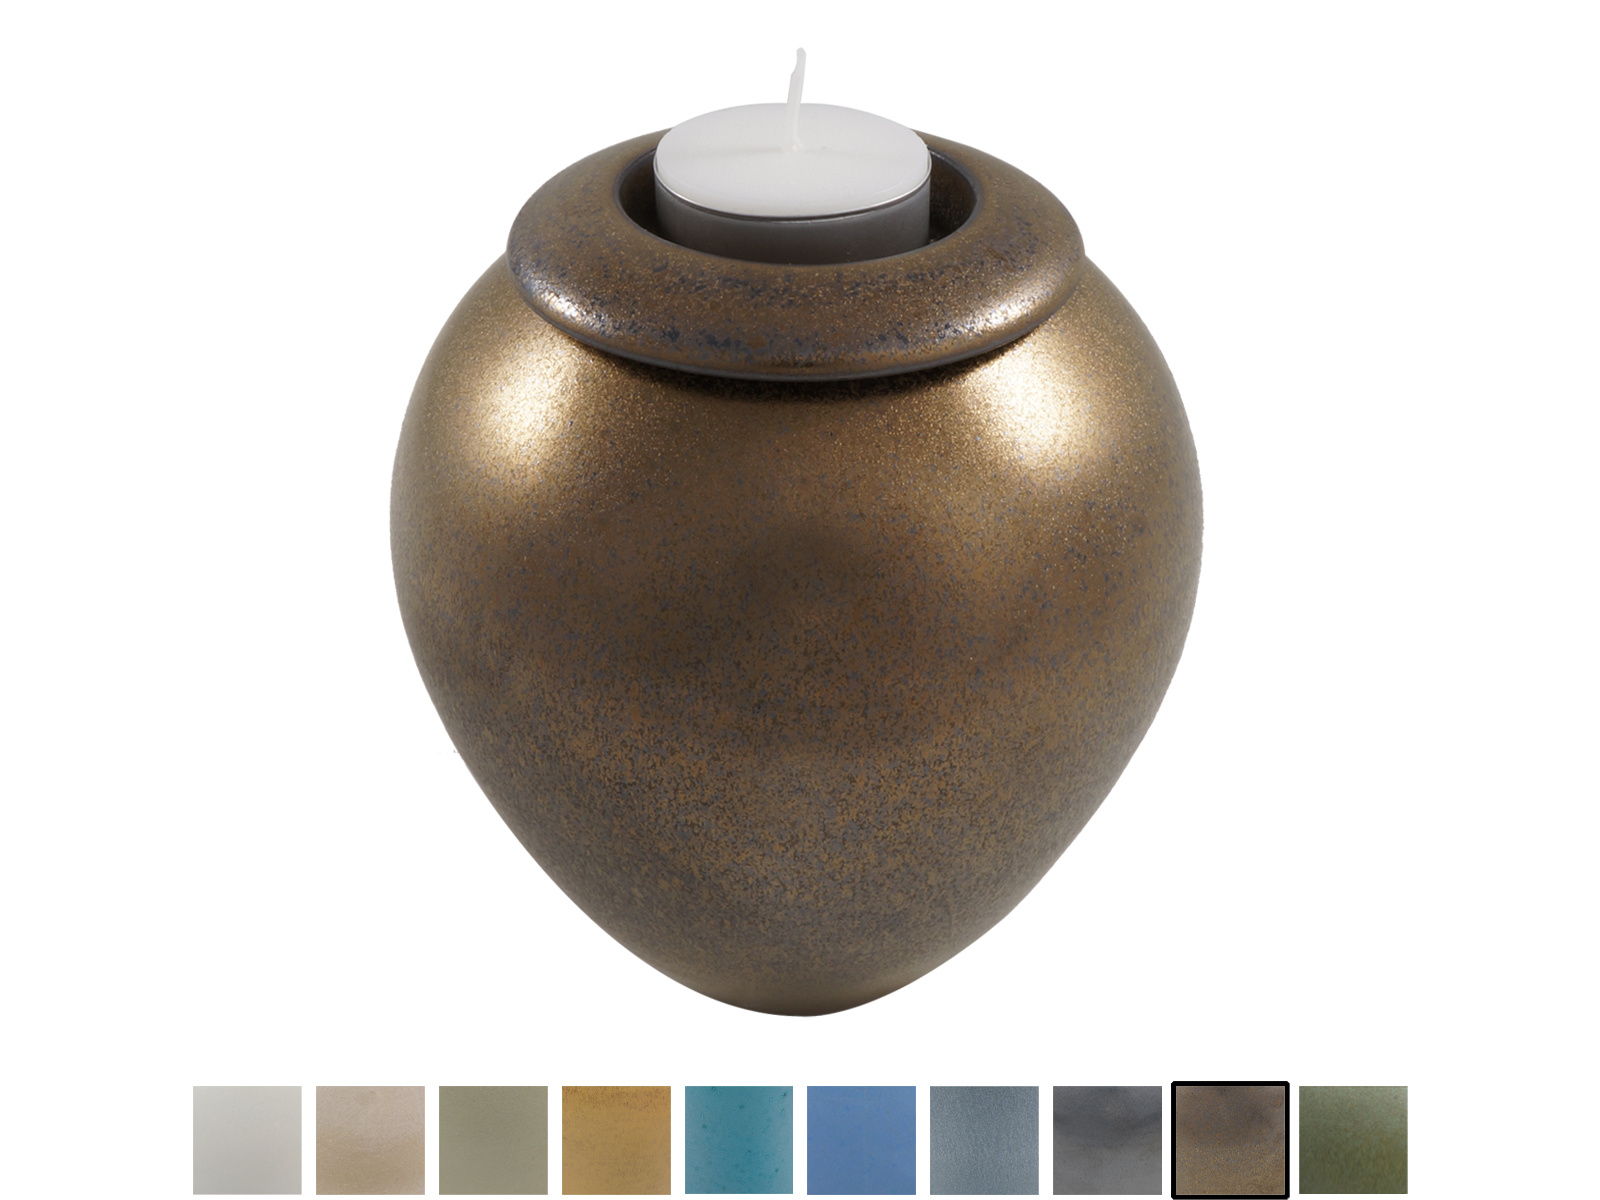  Keramische urn elegant klein met kaarsje - verkrijgbaar in 10 kleuren